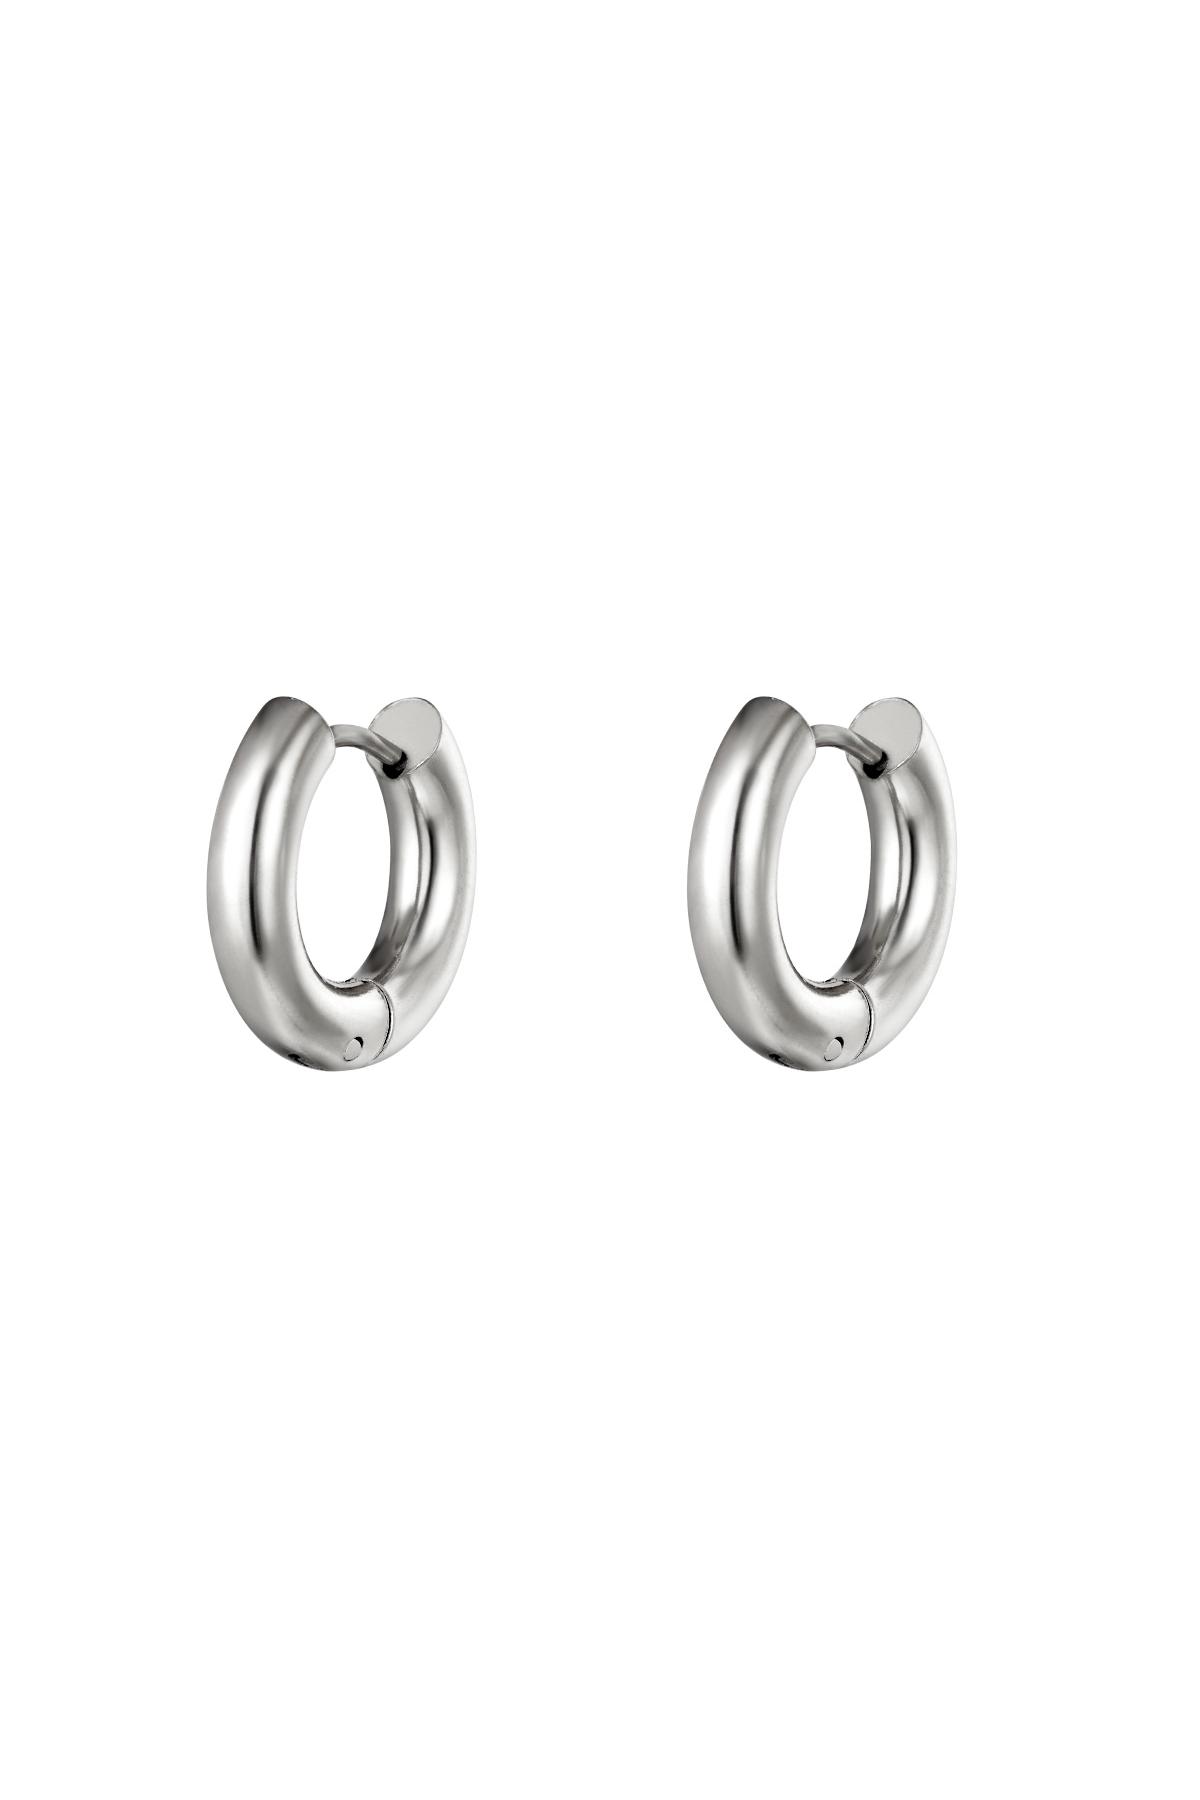 Chunky hoop earrings Silver Stainless Steel 